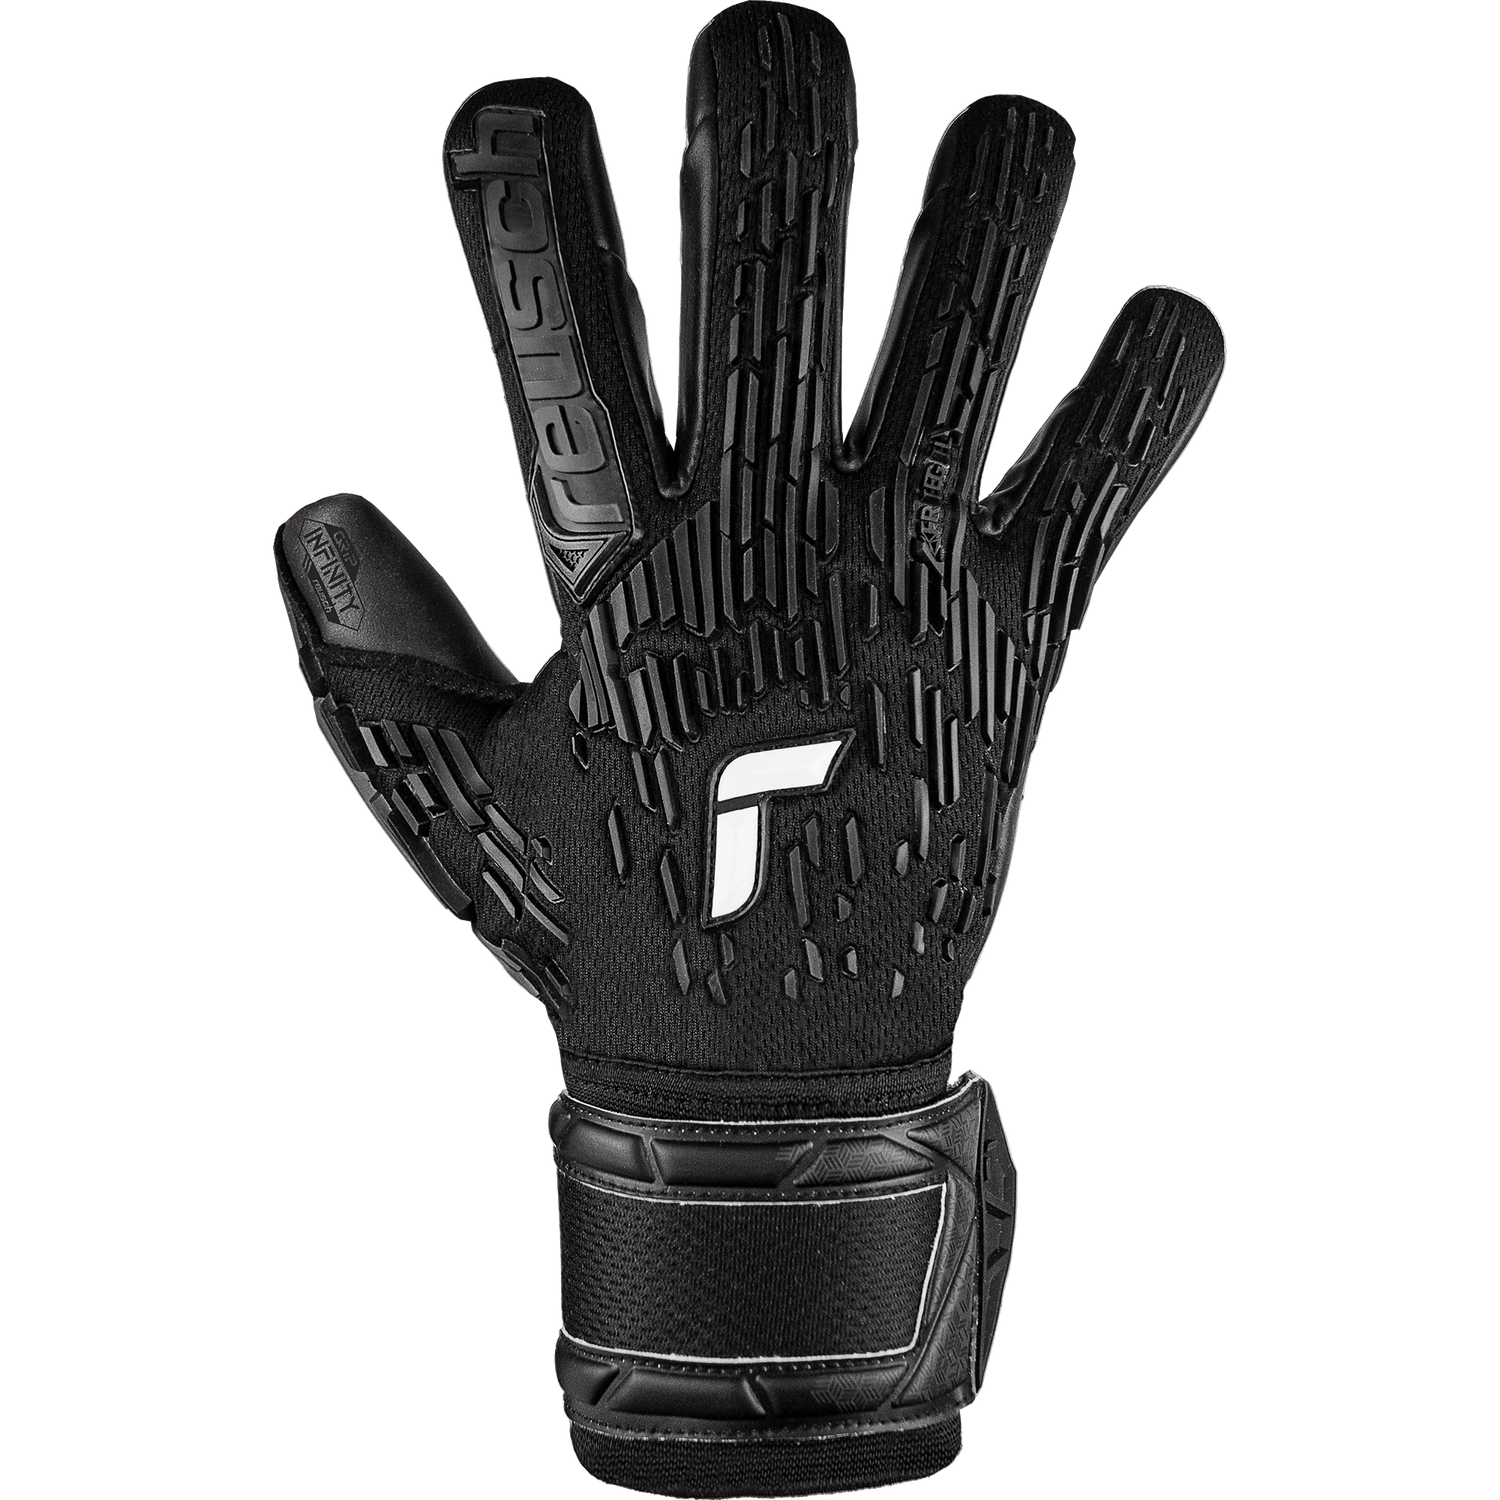 Reusch Attrakt Freegel Infinity Goalkeeper Gloves (Single - Outer)